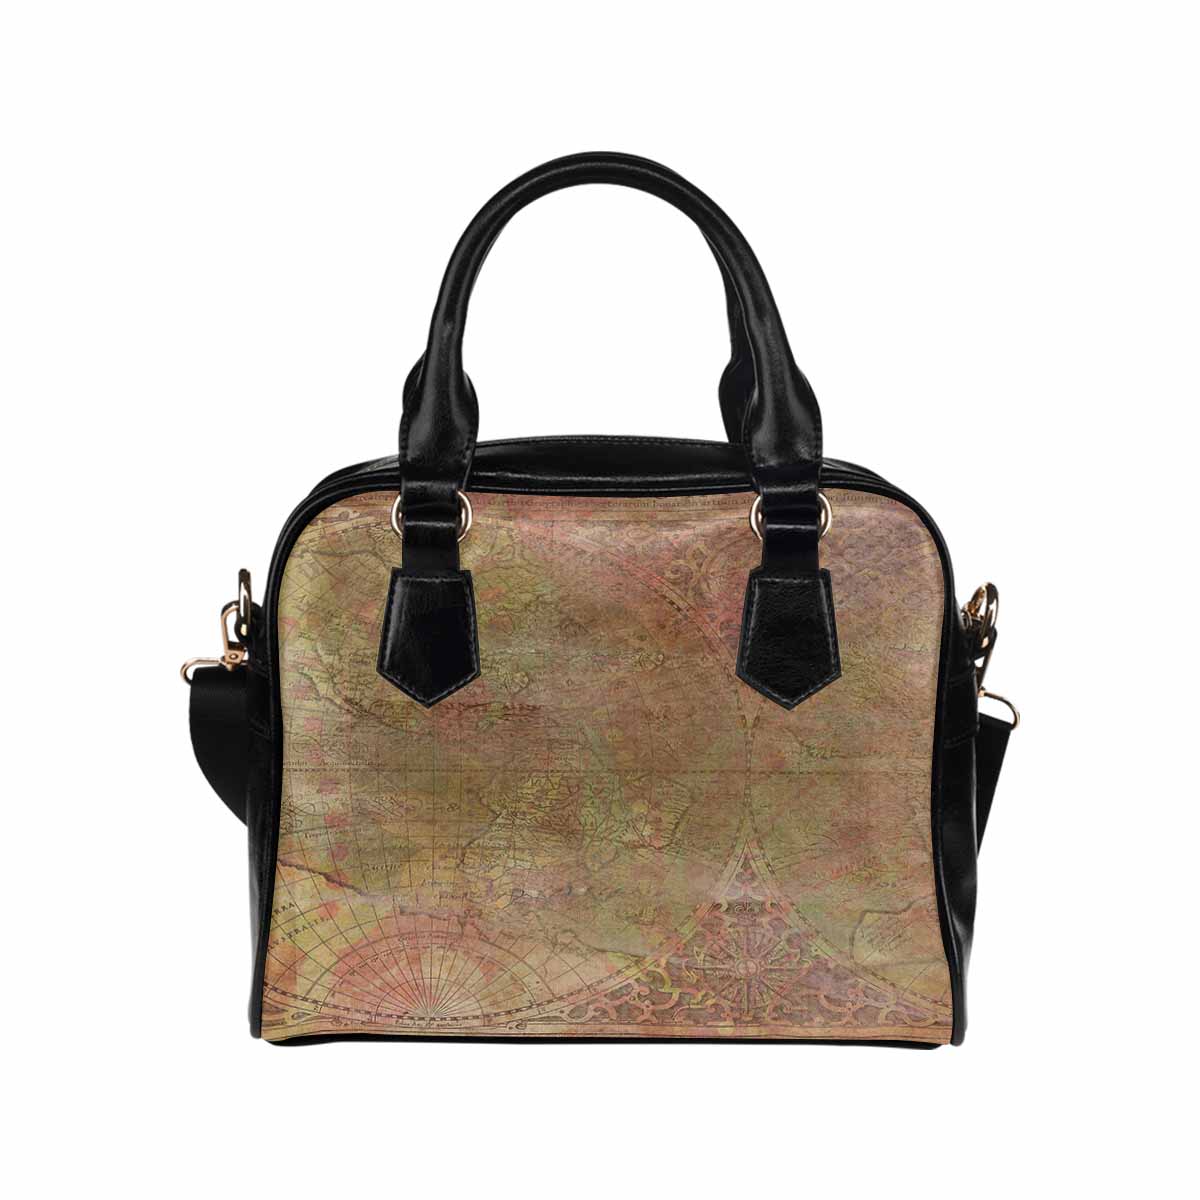 Antique general print handbag, MODEL1695341,Design 62